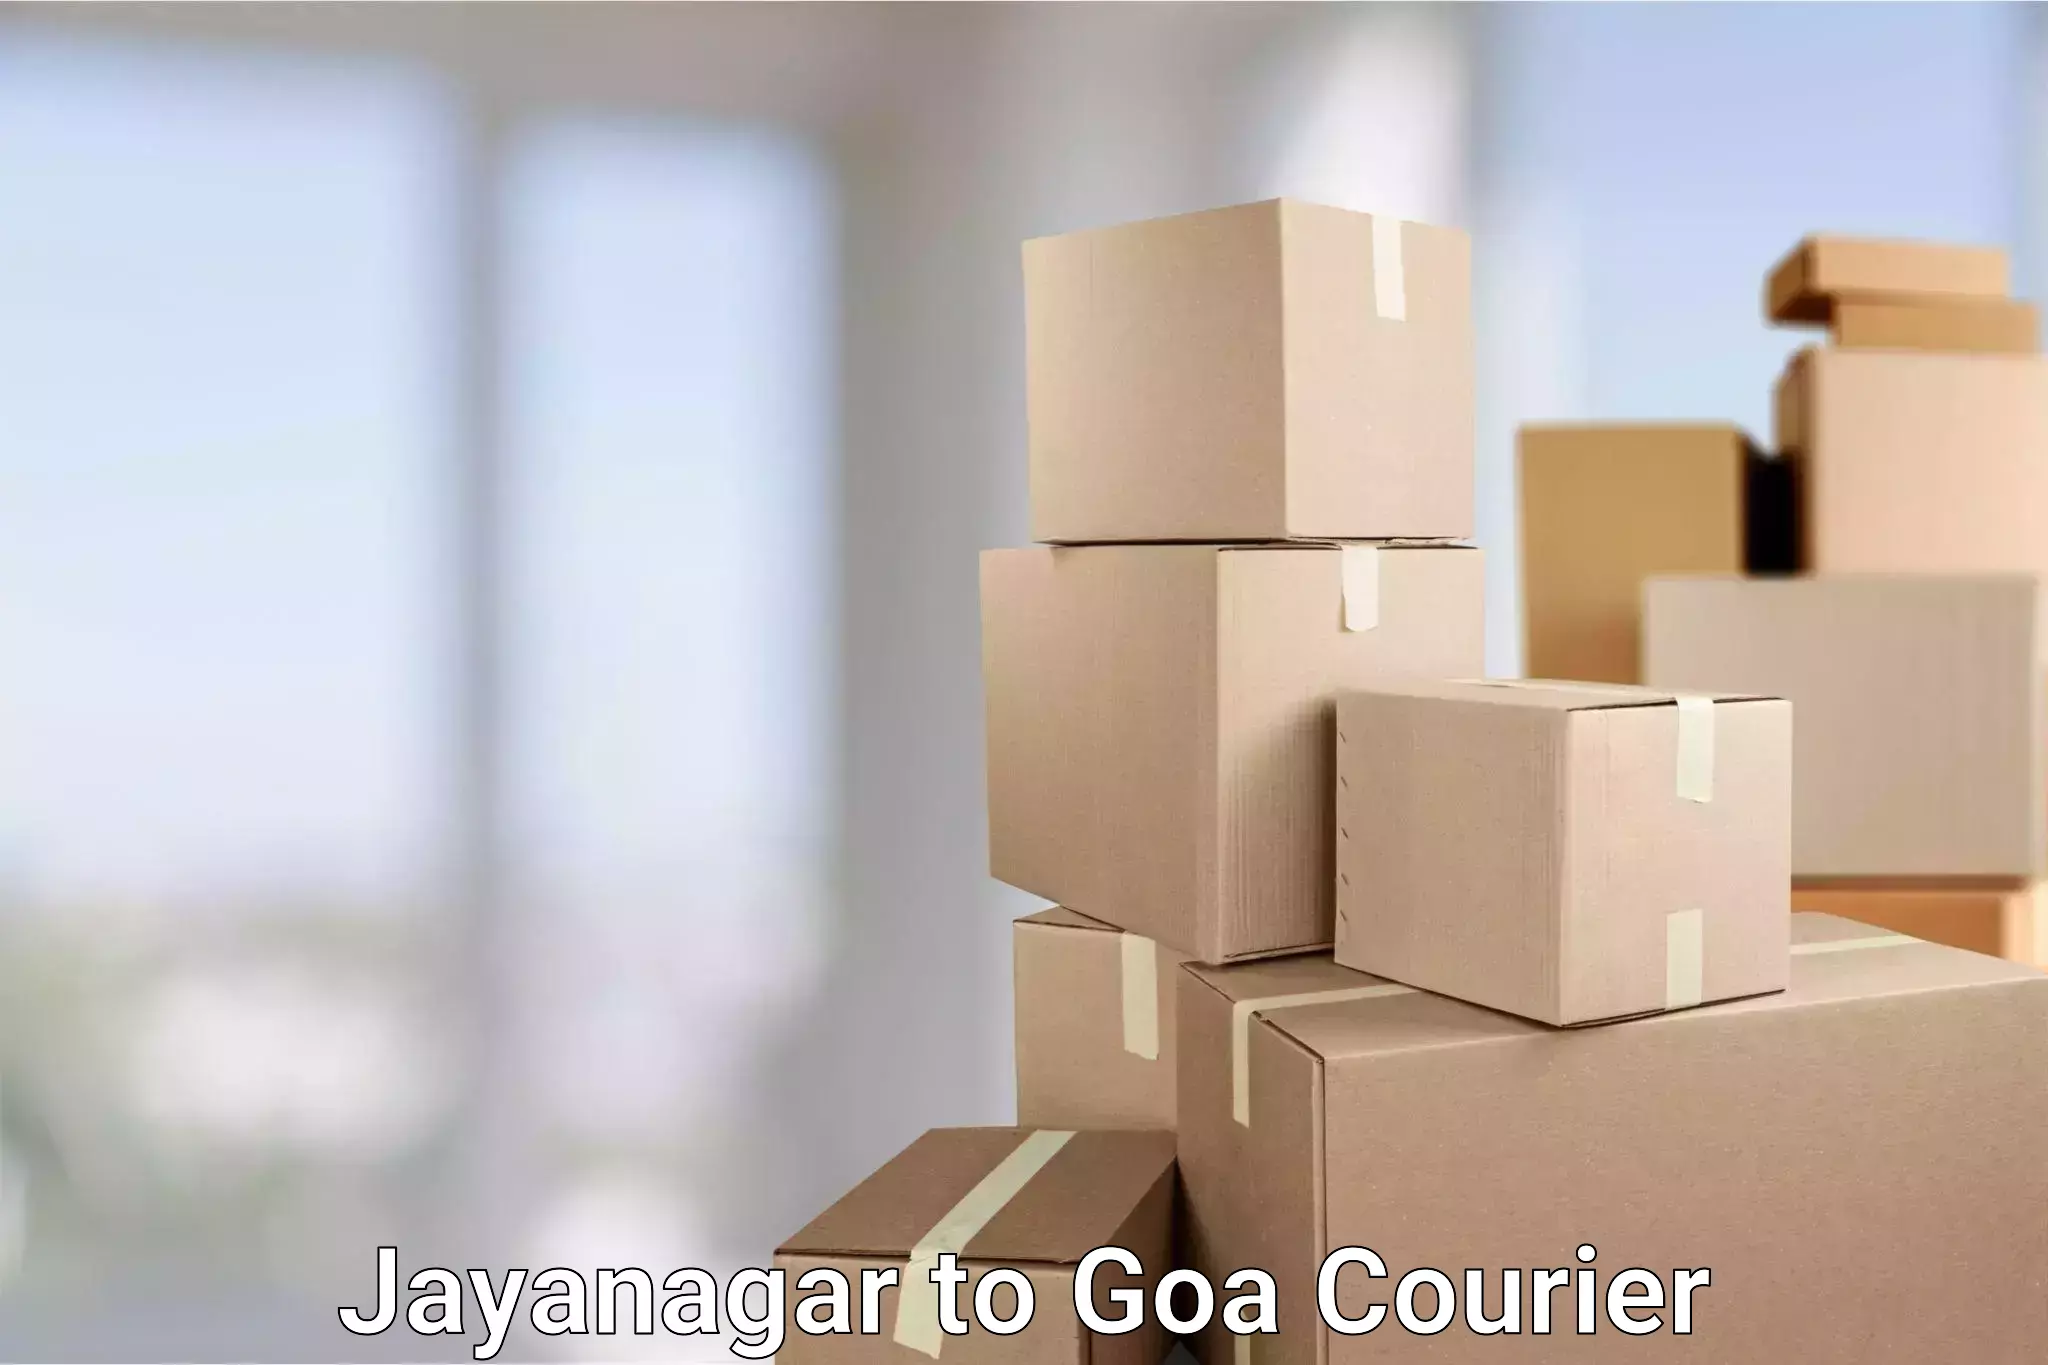 Modern parcel services Jayanagar to IIT Goa